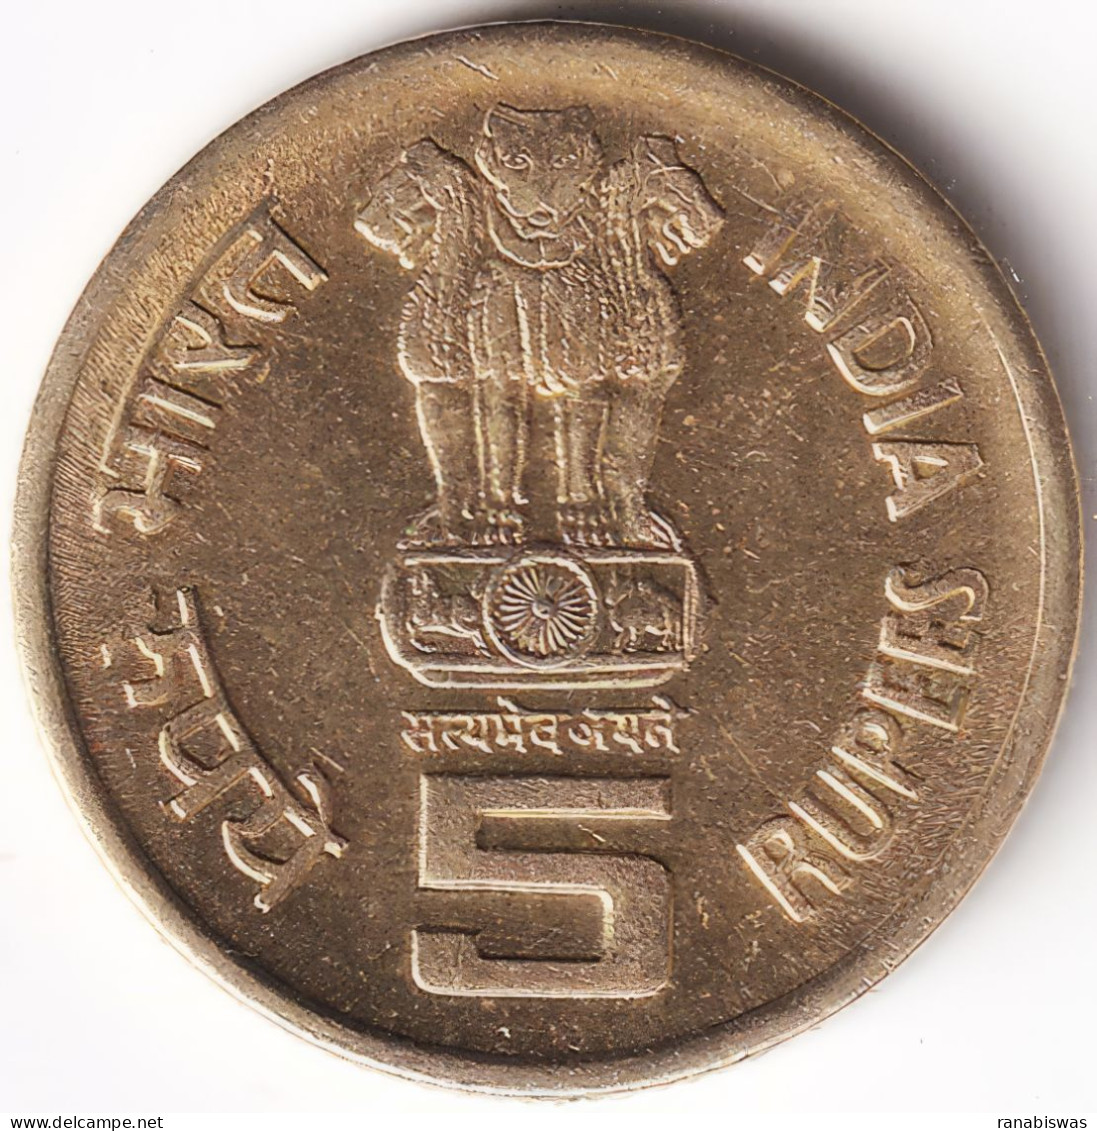 INDIA COIN LOT 150, 5 RUPEES 2009, PERARIGNAR ANNA, HYDERABAD MINT, AUNC, SCARE - India